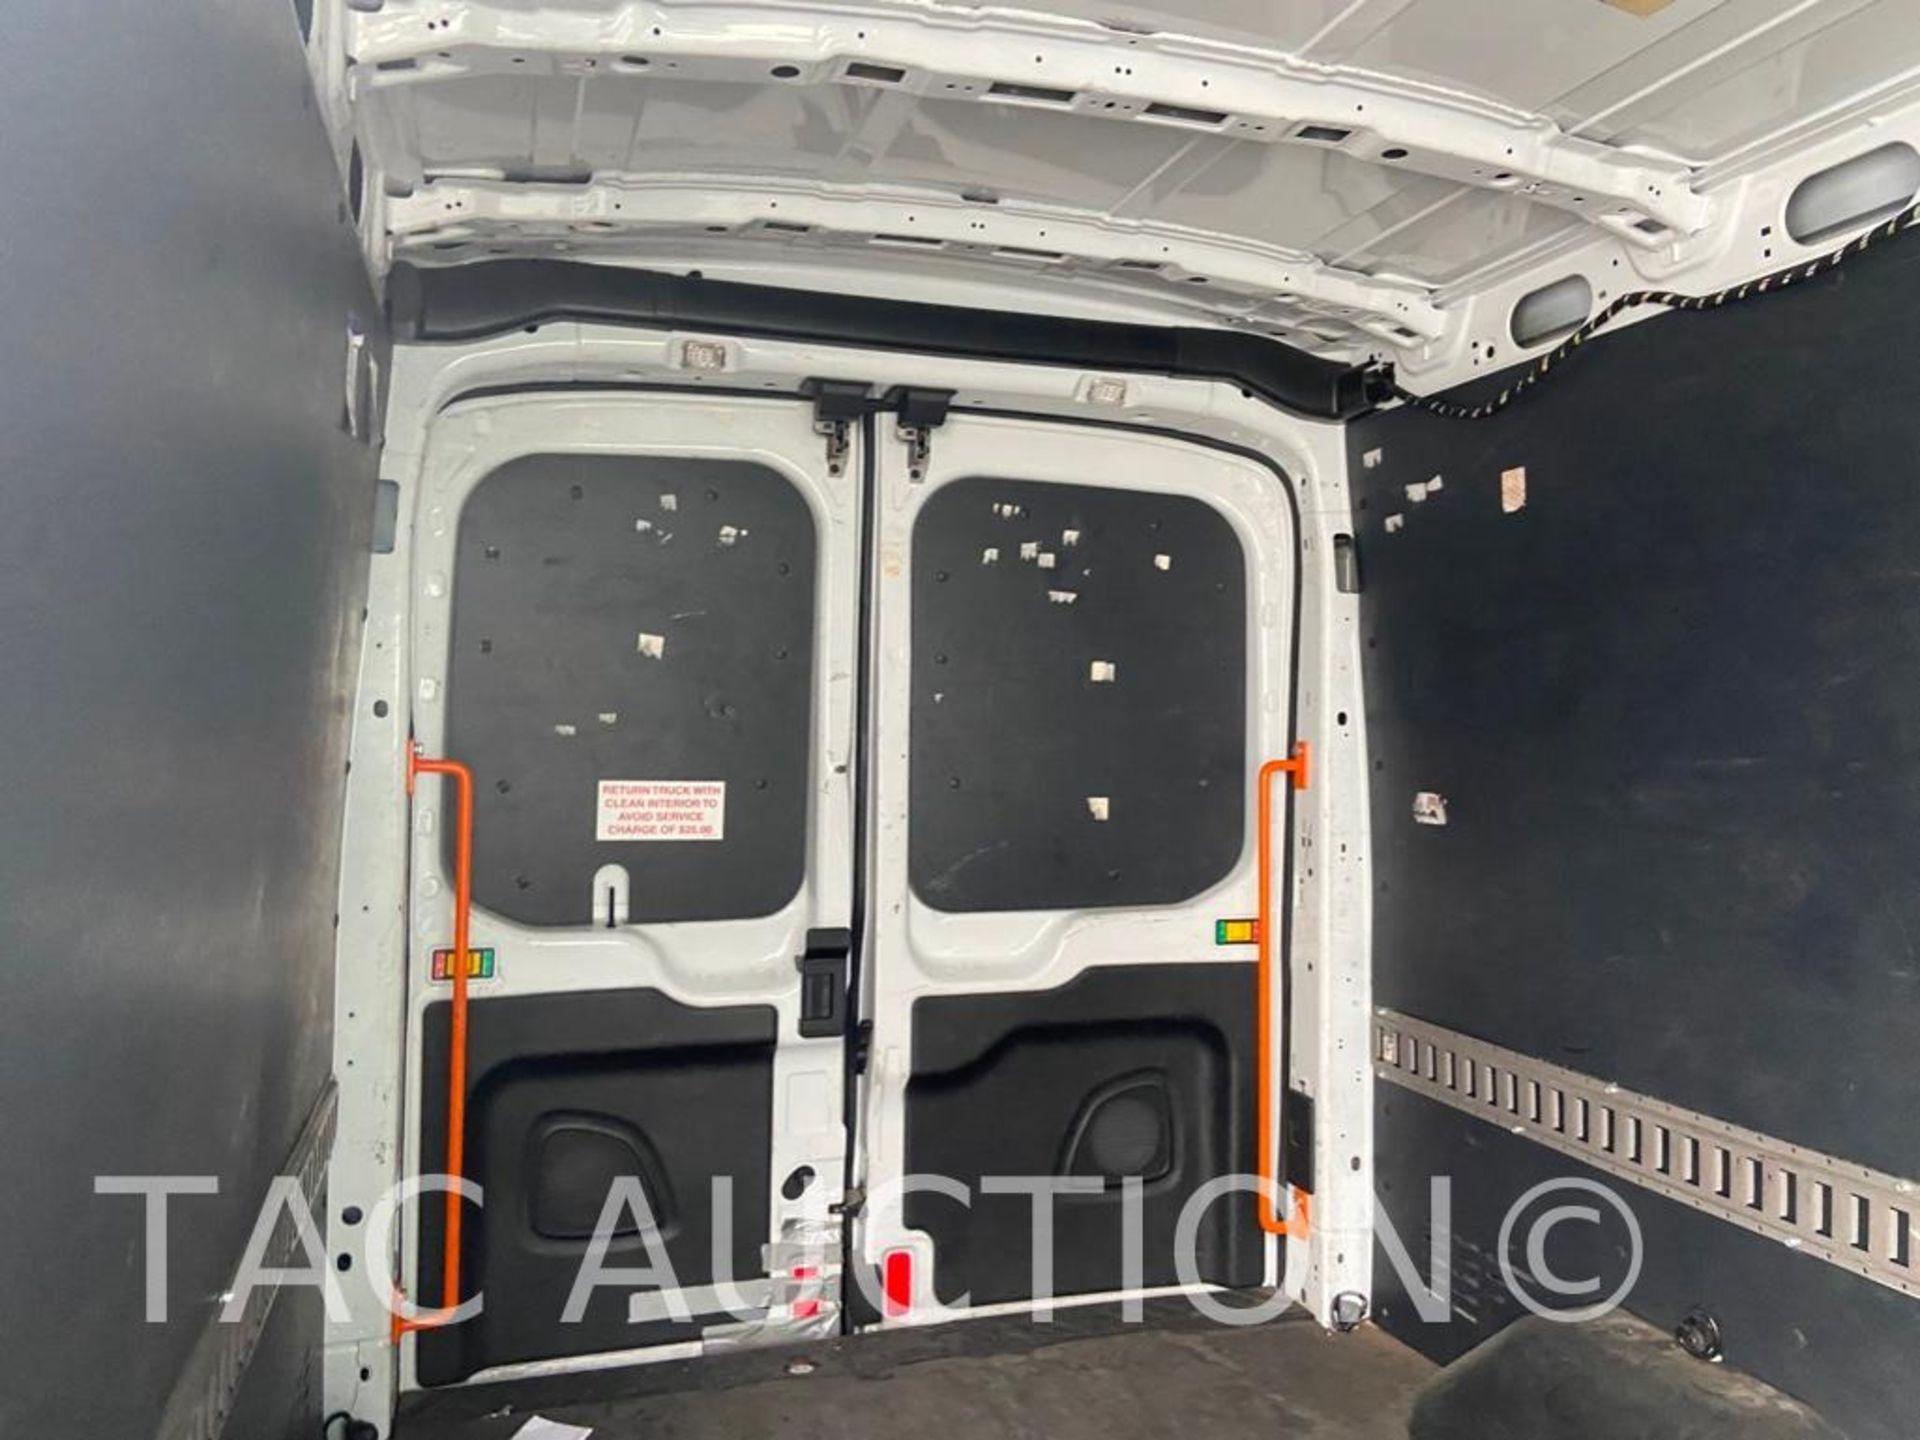 2019 Ford Transit 150 Cargo Van - Image 40 of 80